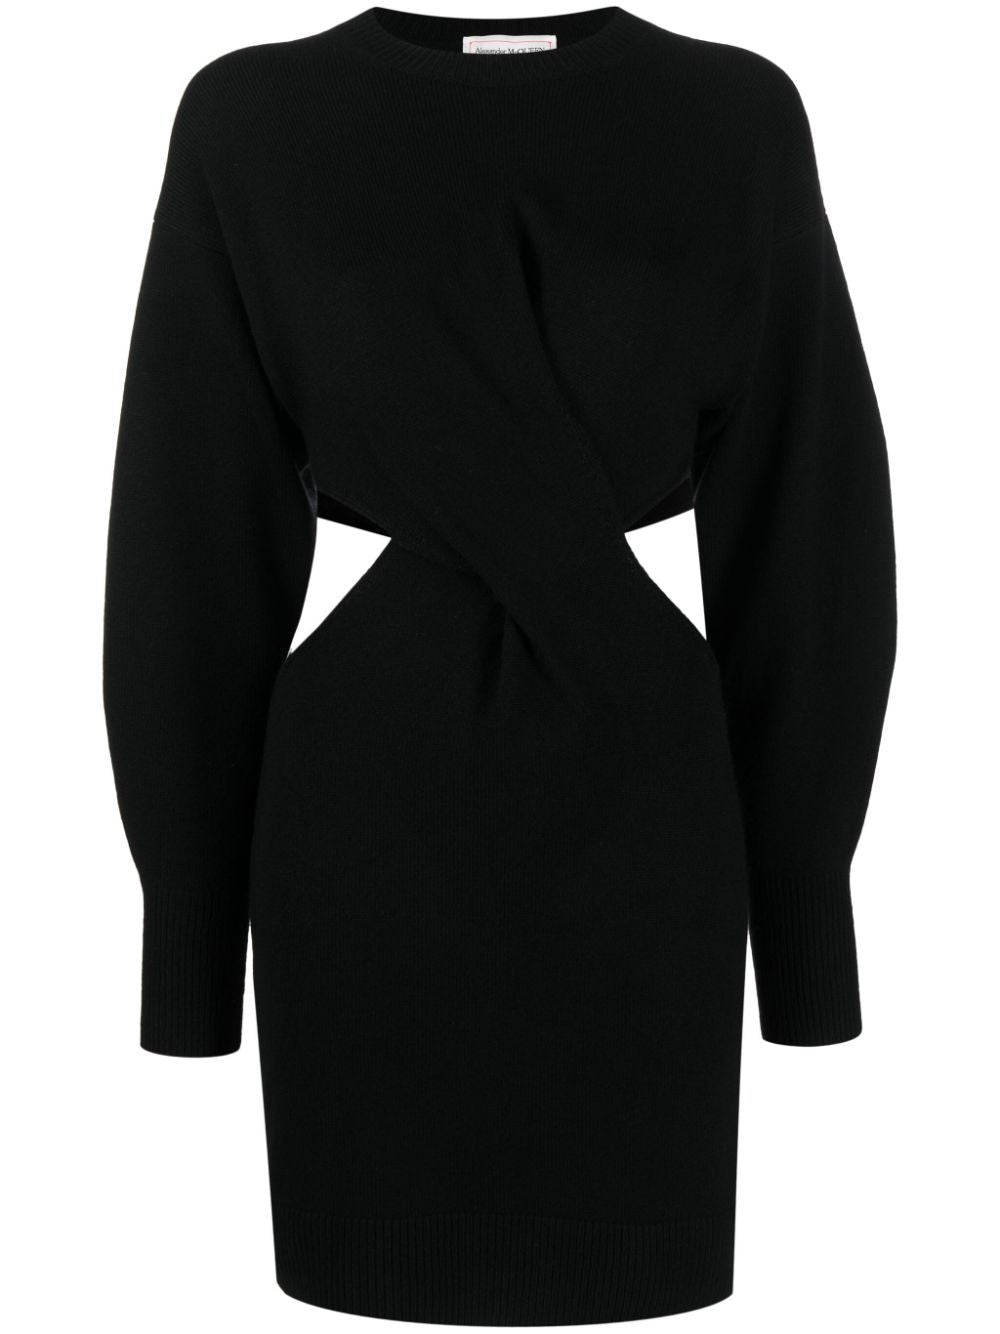 فستان صوف أسود قصير للنساء لموسم خريف وشتاء ٢٠٢٣